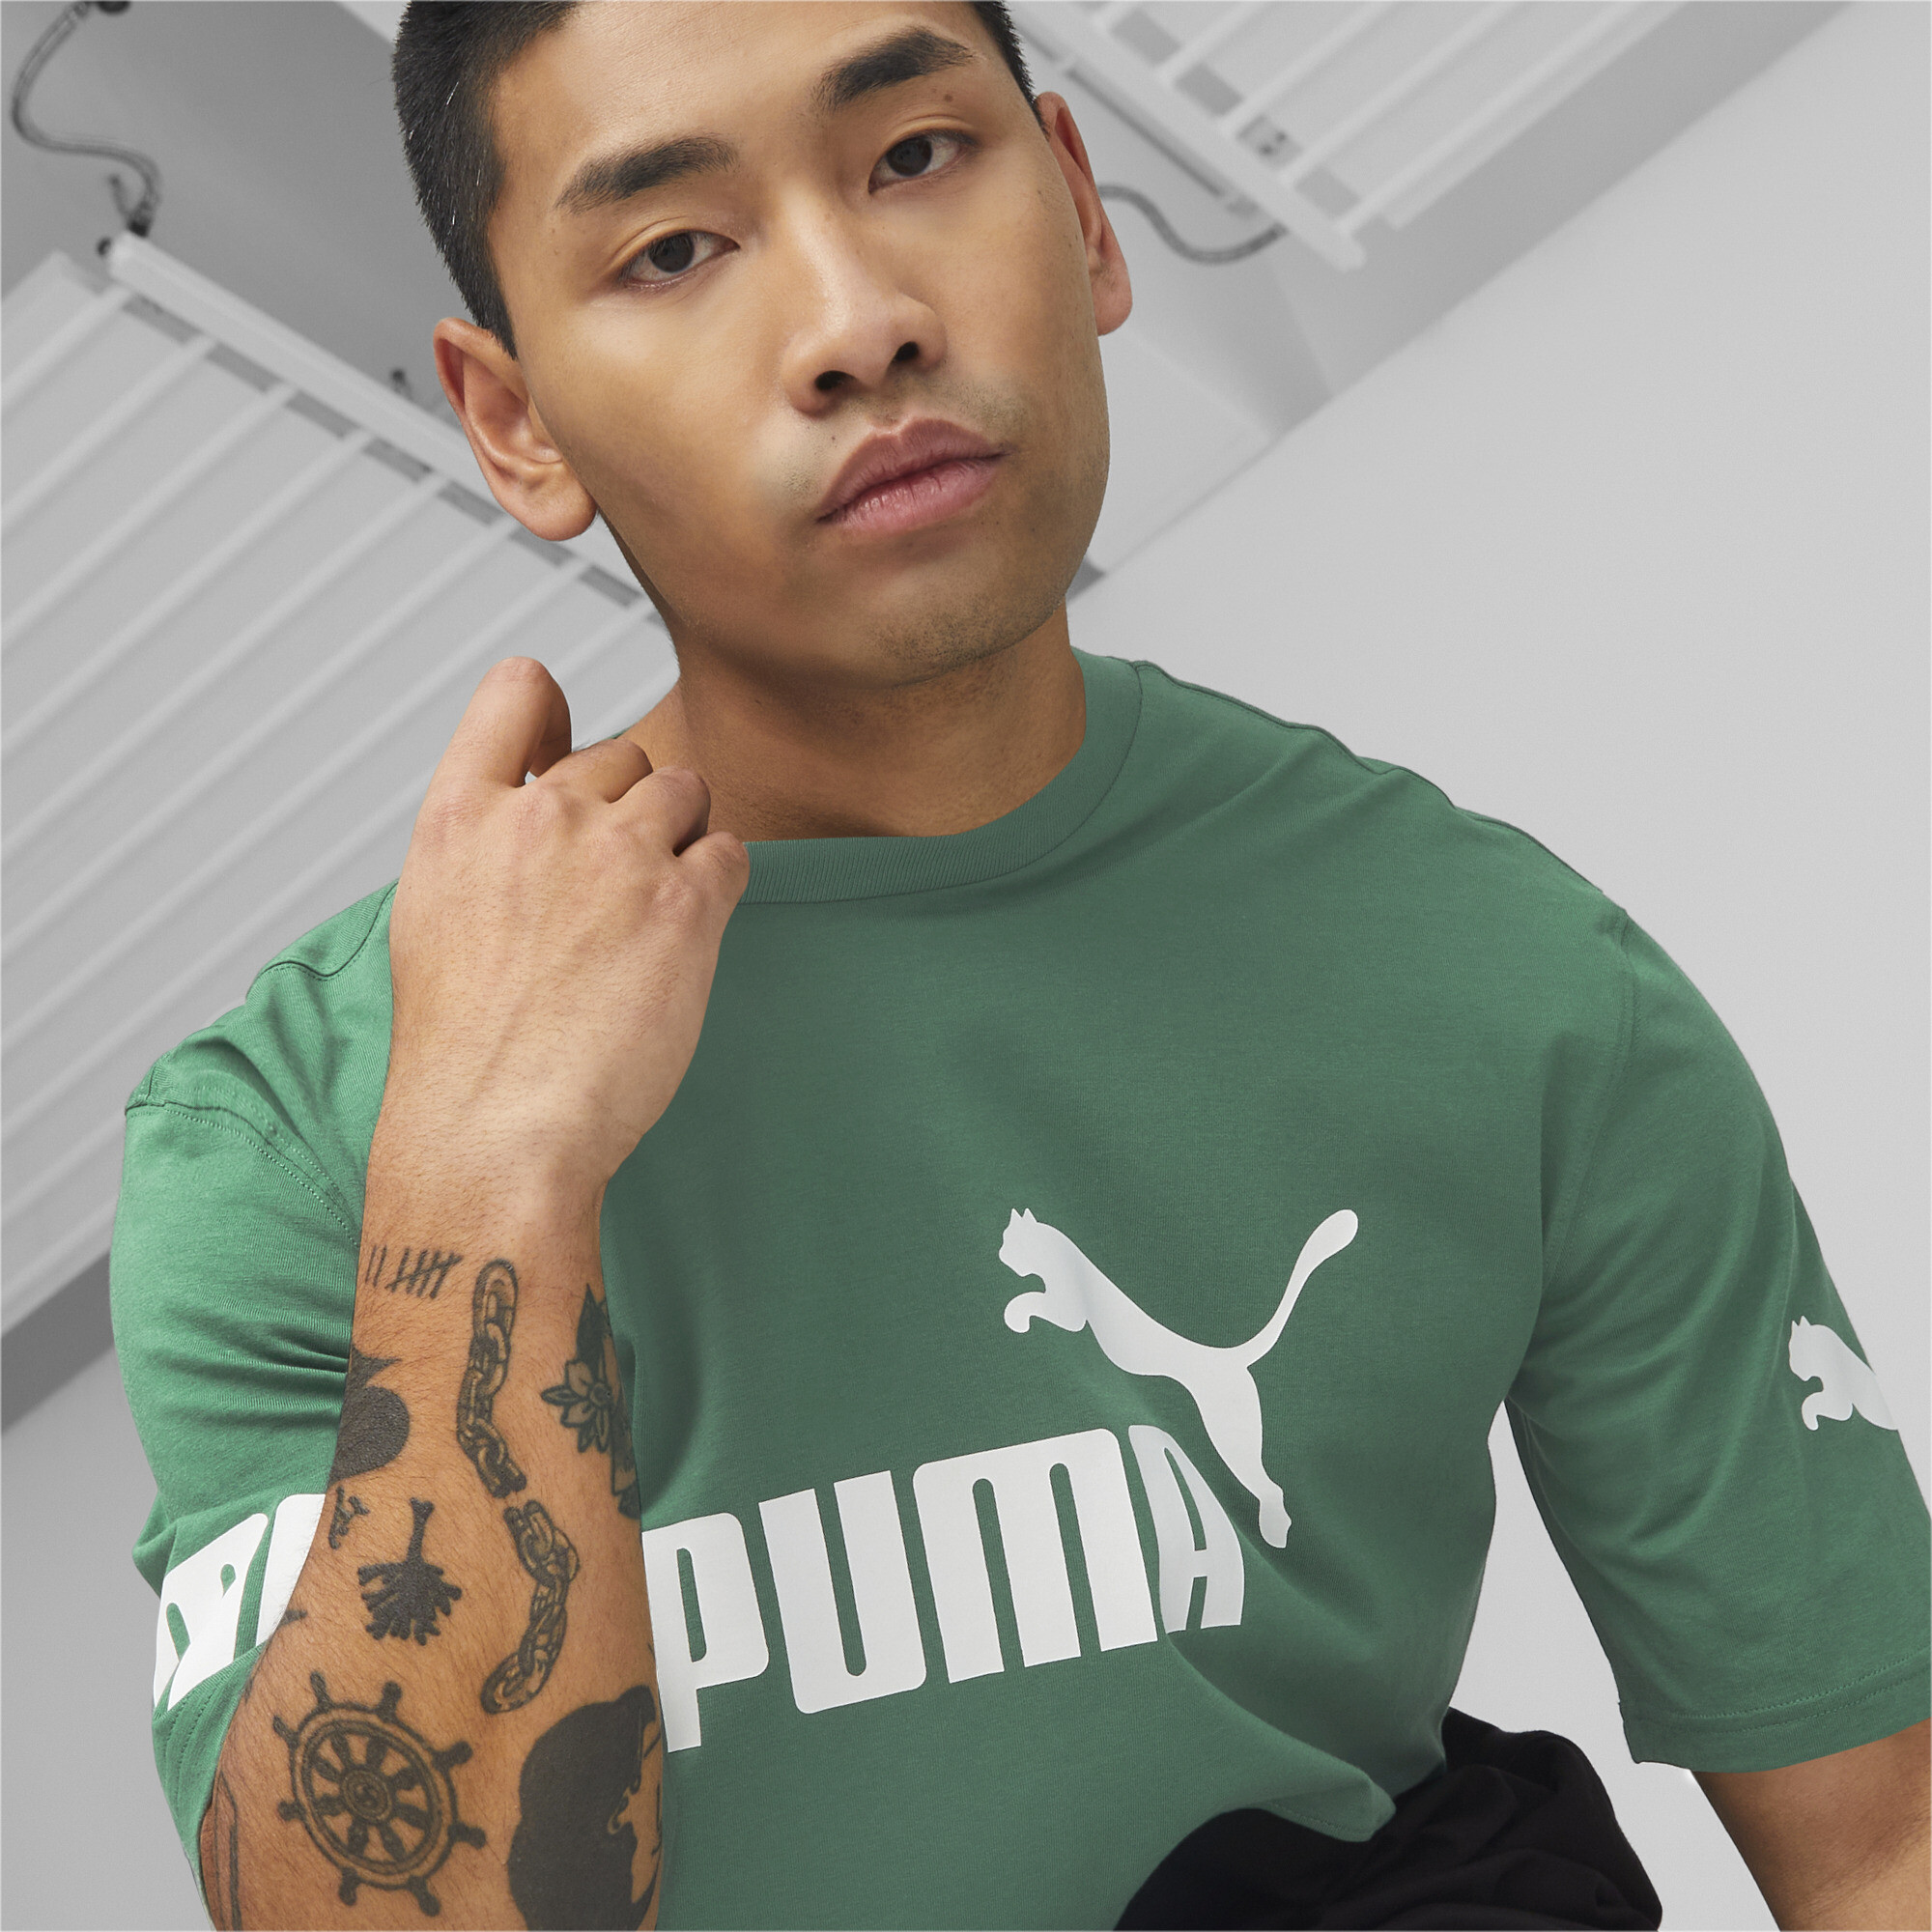 PUMA POWER Colourblock T-Shirt Tee Top Mens | eBay